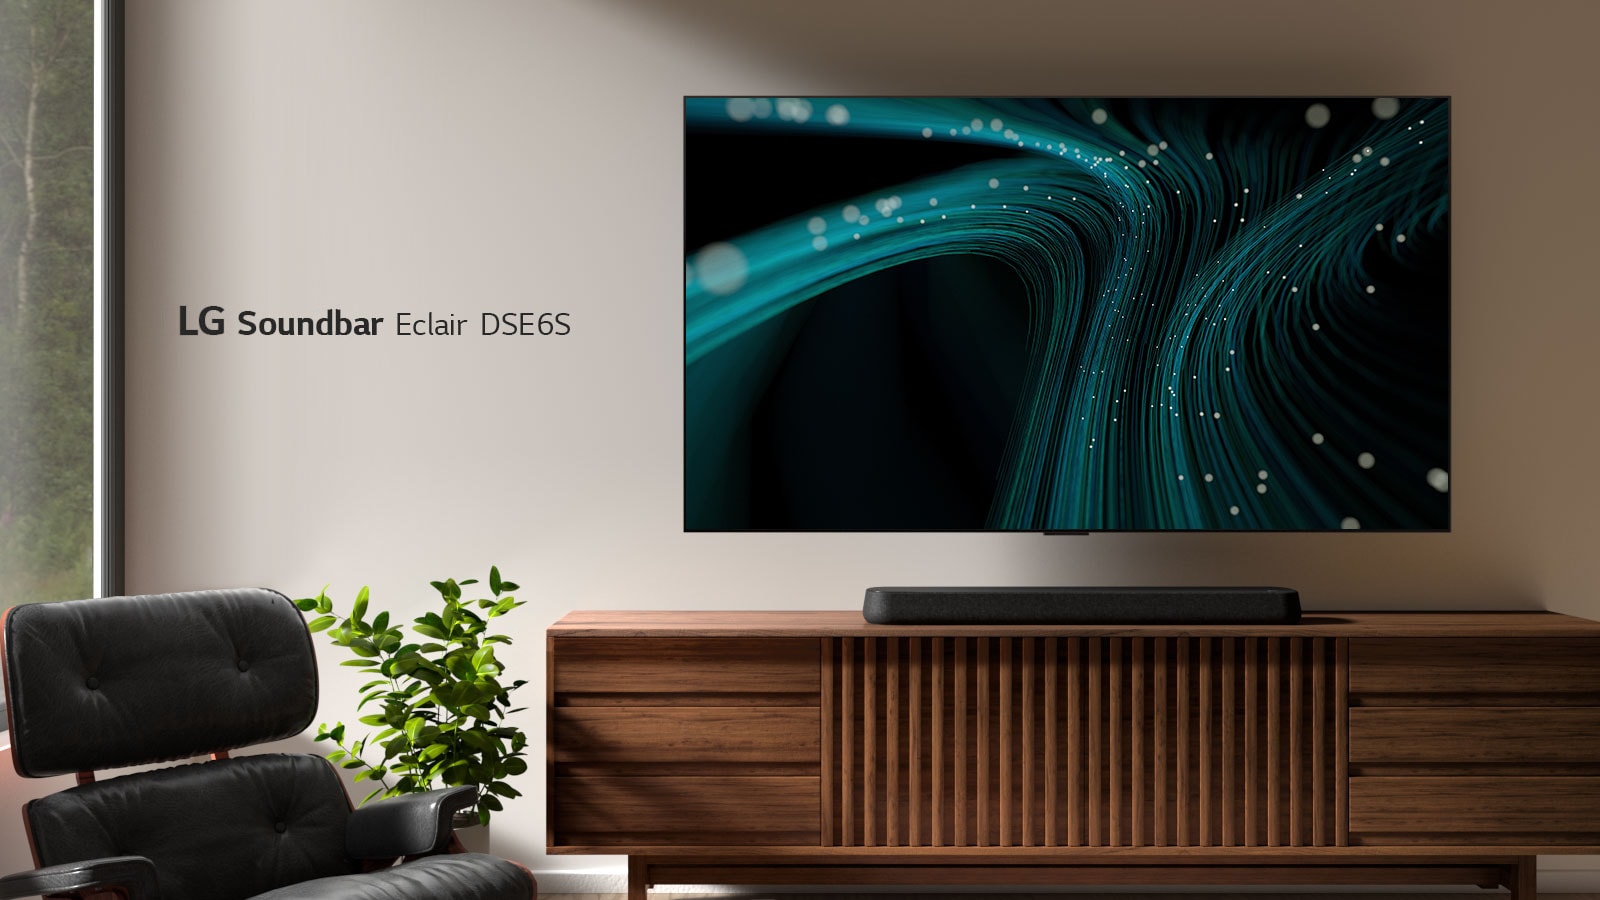 Die LG Soundbar DSE6S steht auf einem Holzgehäuse. Darüber ist ein wandmontierter Fernseher mit blauen Klangwellenbildern und gepunkteten Lichtern angebracht. Auf der linken Seite ist ein Fenster zu sehen und ein schwarzer Ledersessel steht vor einer grünen Pflanze.